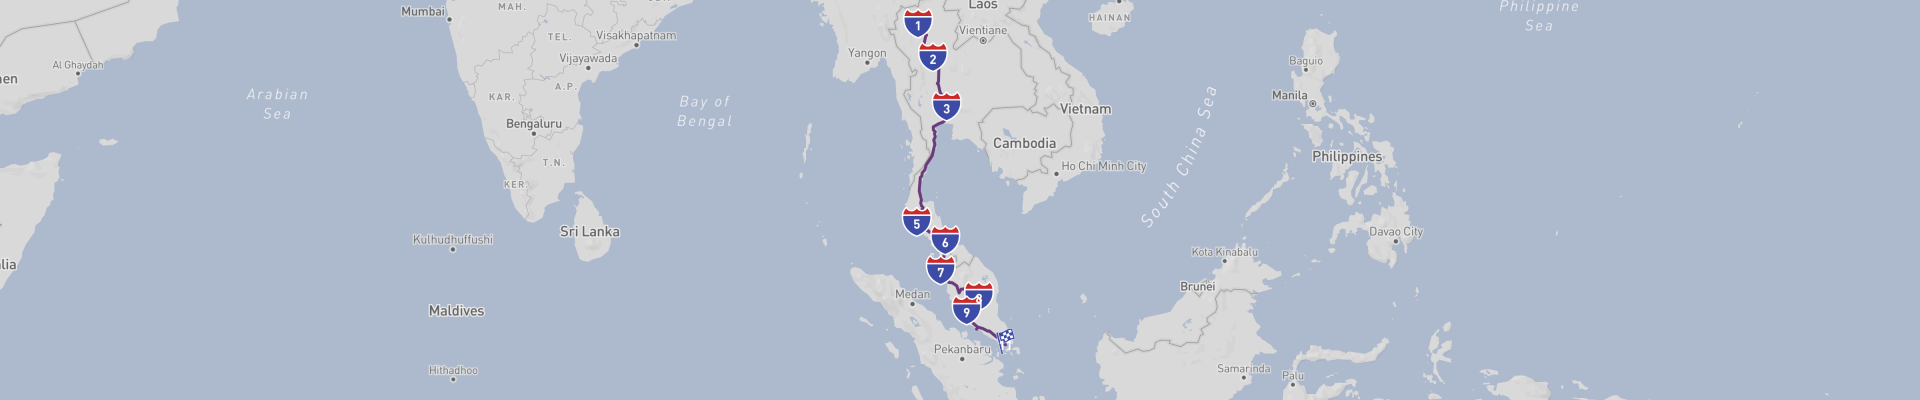 Voyage en voiture du nord de la Thaïlande à Singapour